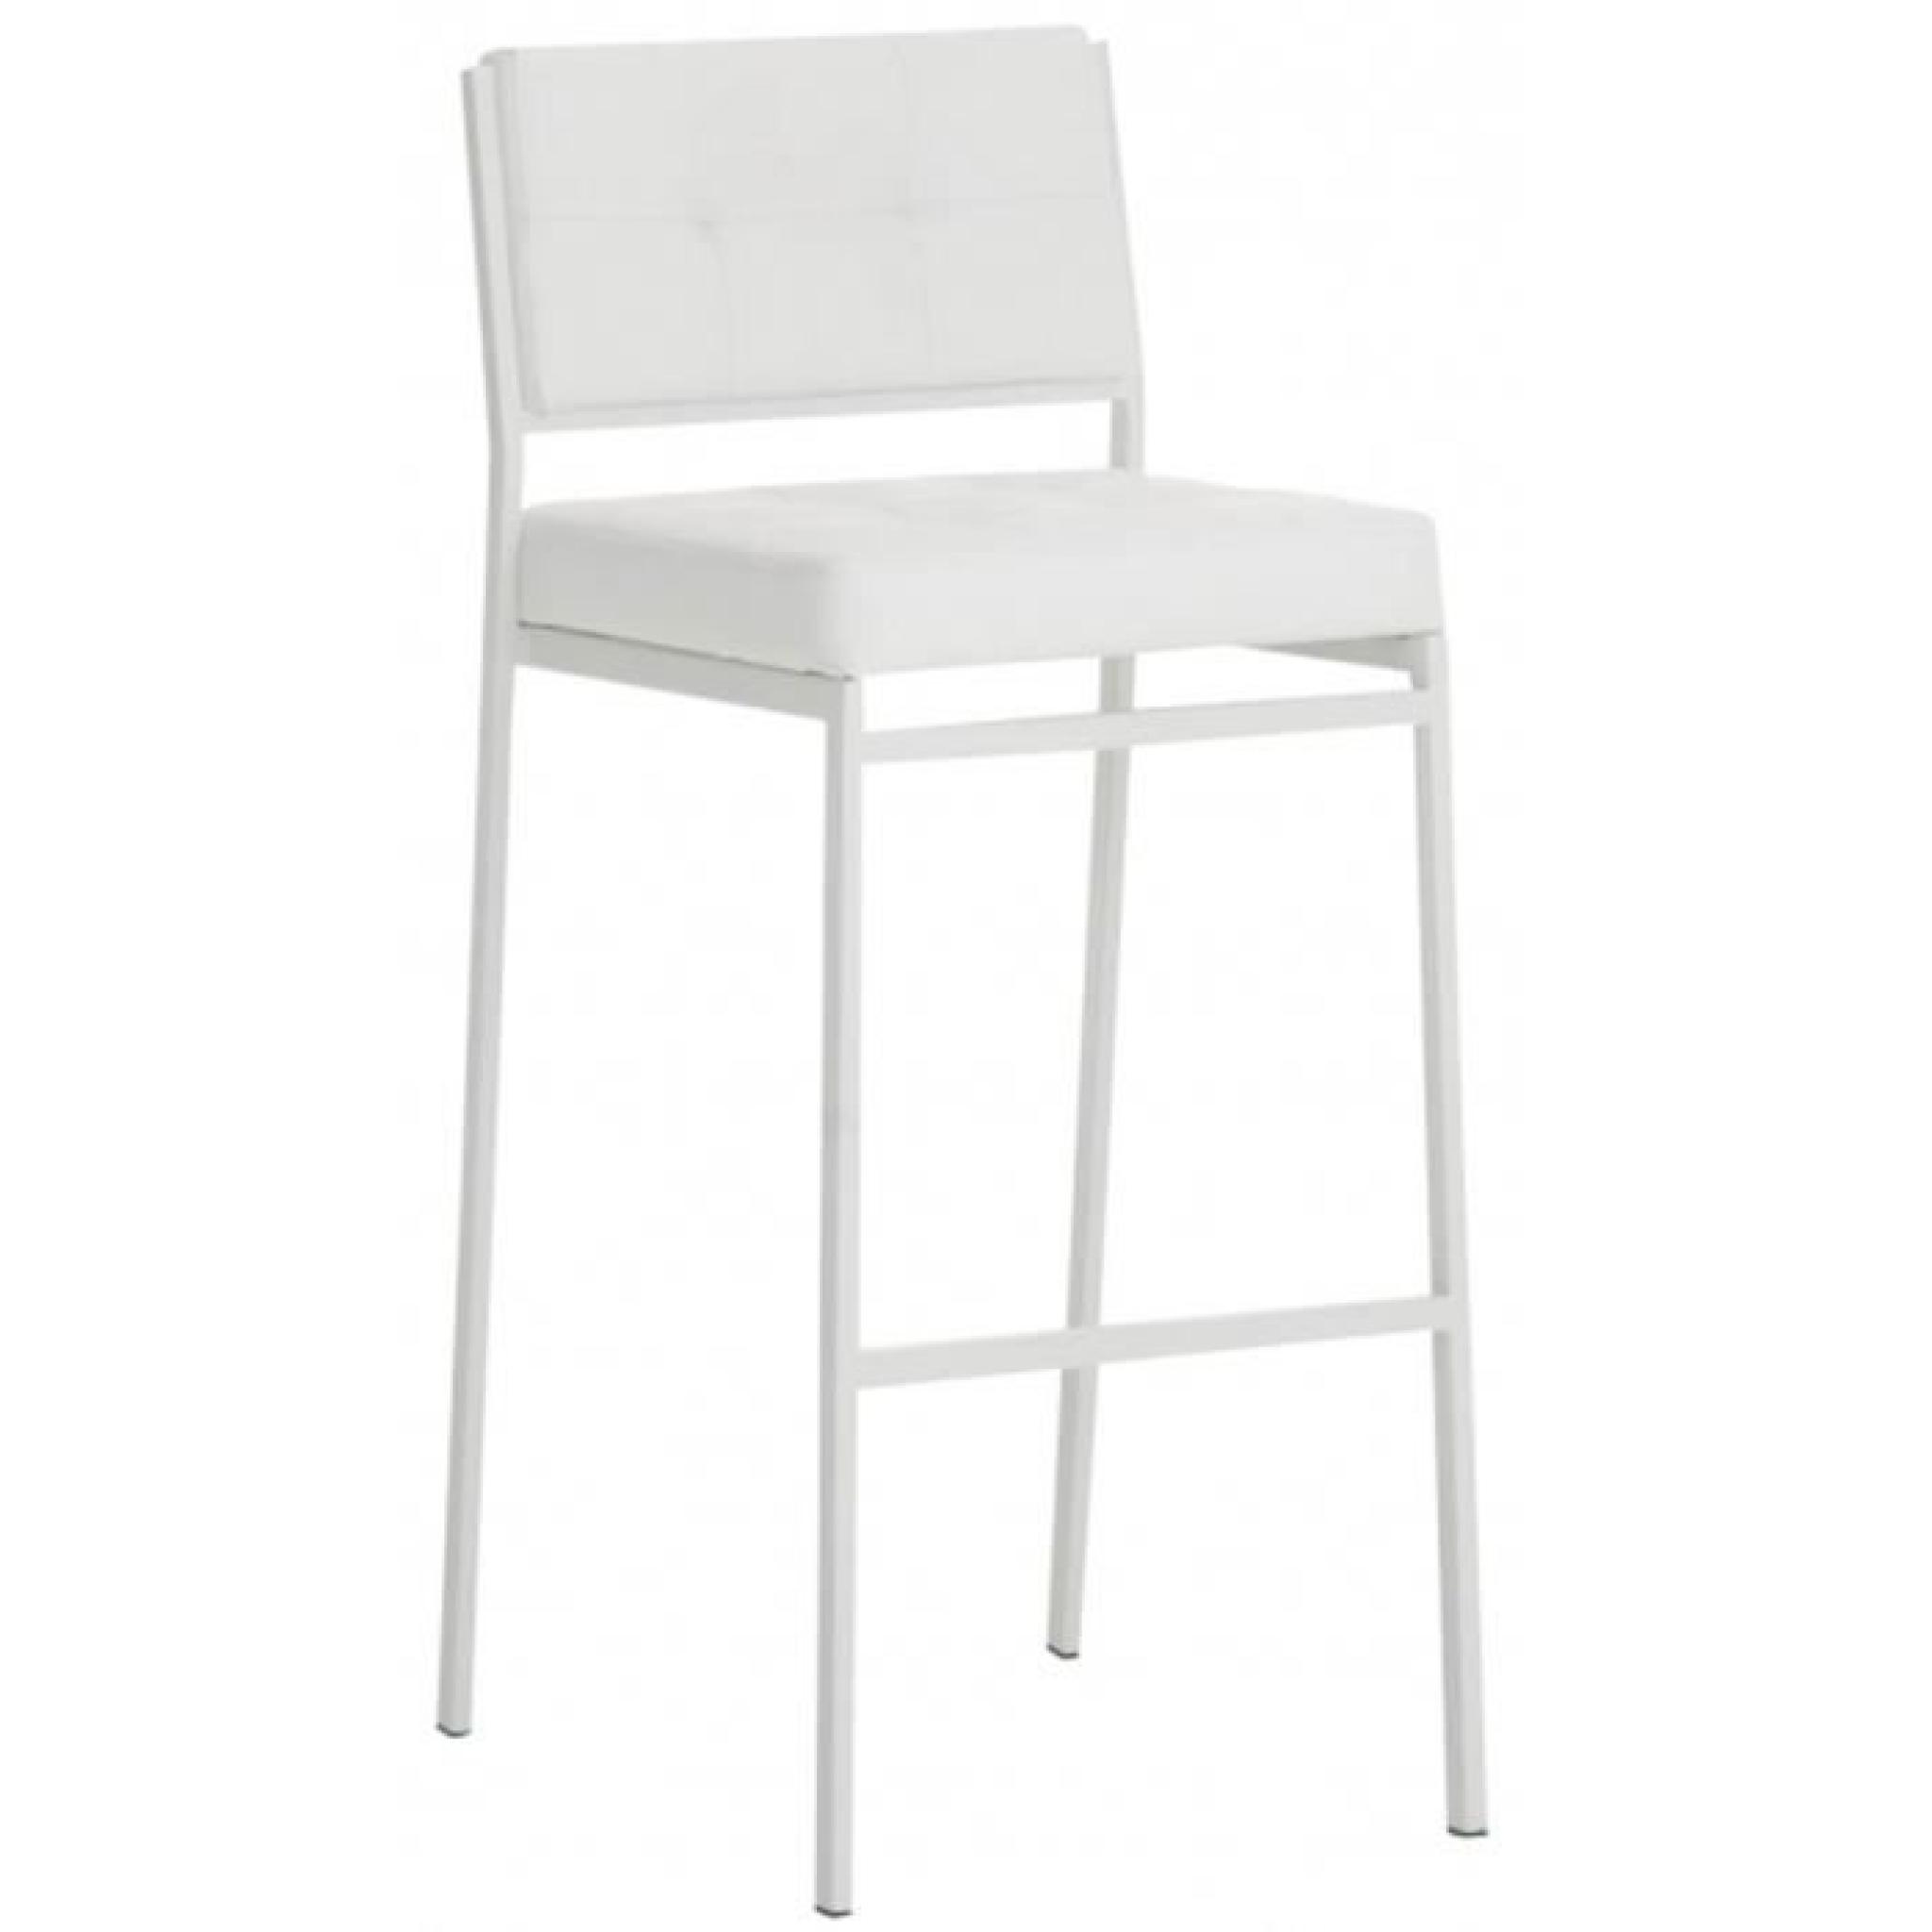 Chaise de bar en métal et PU de couleur blanche, H 101 x L 41 x P 48 cm pas cher